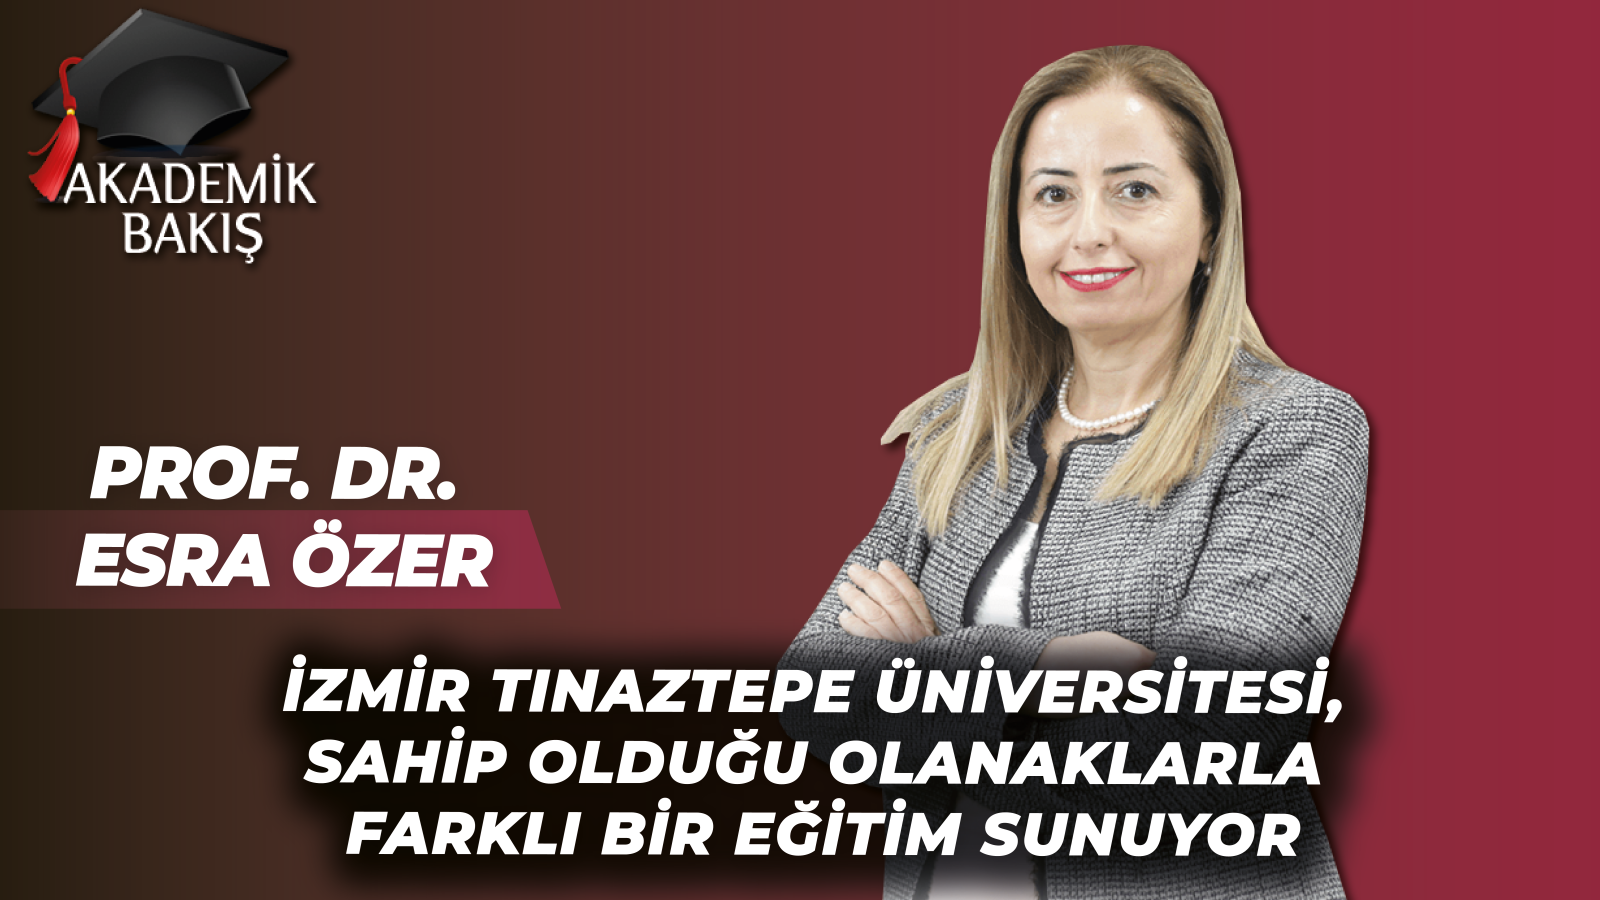 İzmir Tınaztepe Ünv.’si TIP Fakültesi Prof. Dr. Esra Özer Akademik Bakış’a Konuk Oldu